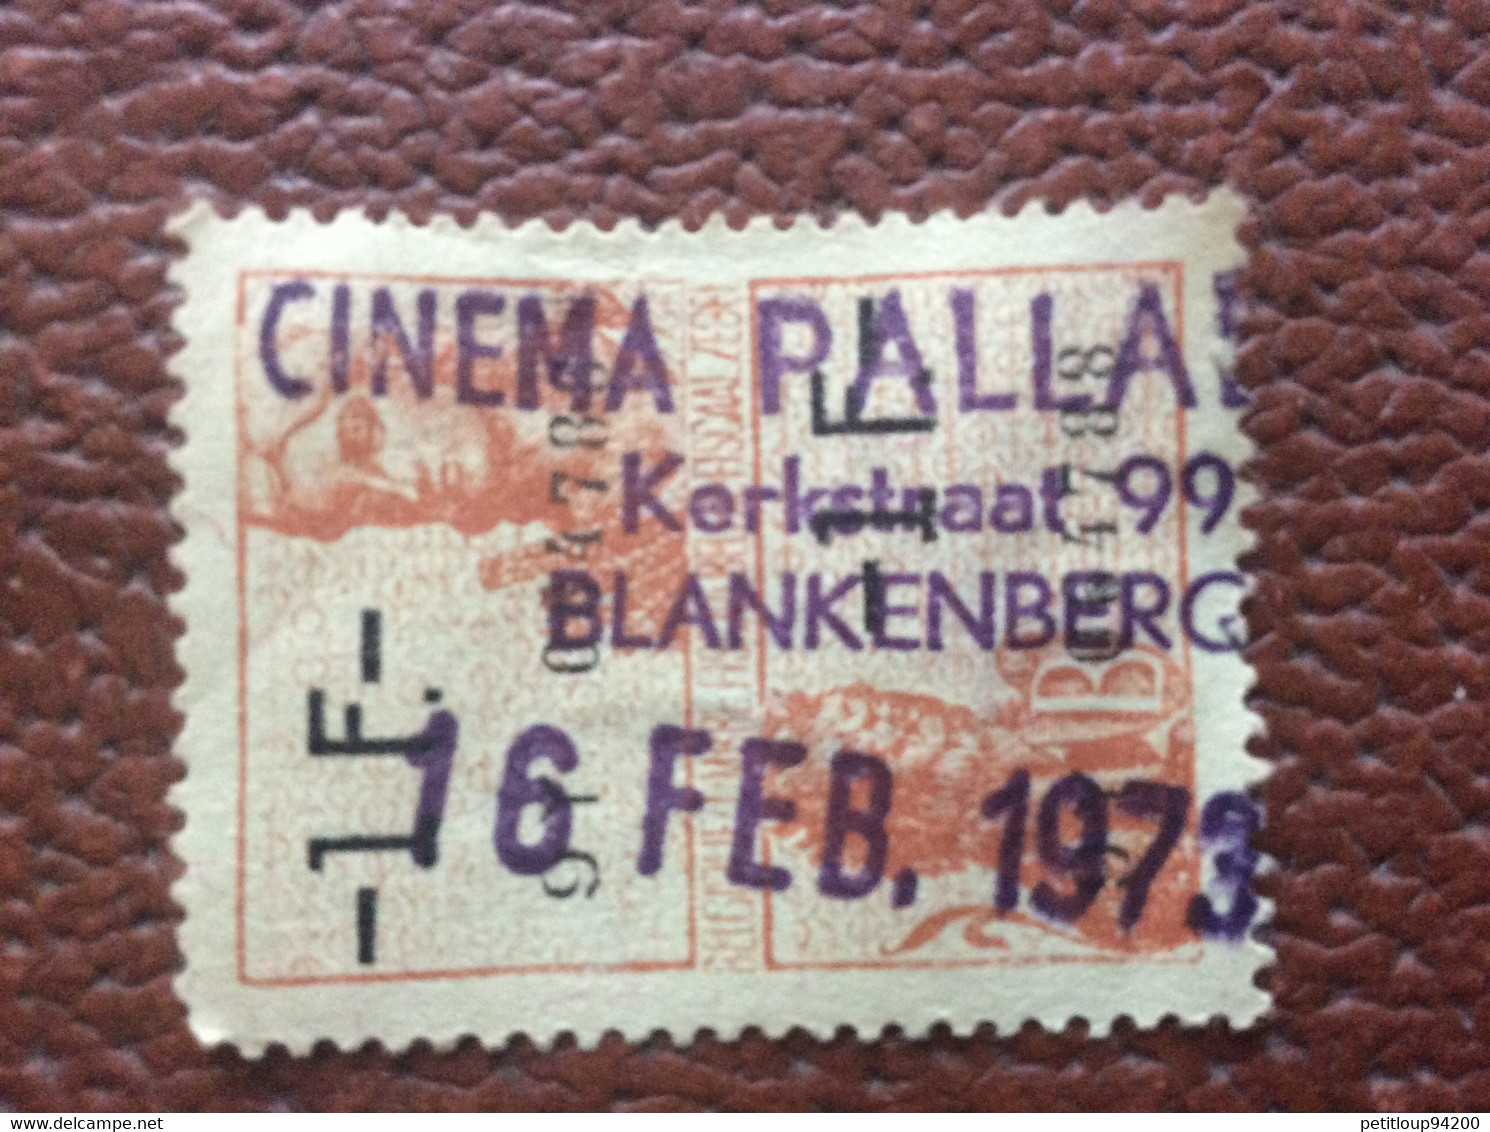 BELGIQUE  Timbre Fiscal 1 F  CINÉMA PALLADIUM  Février 1973 - Stamps